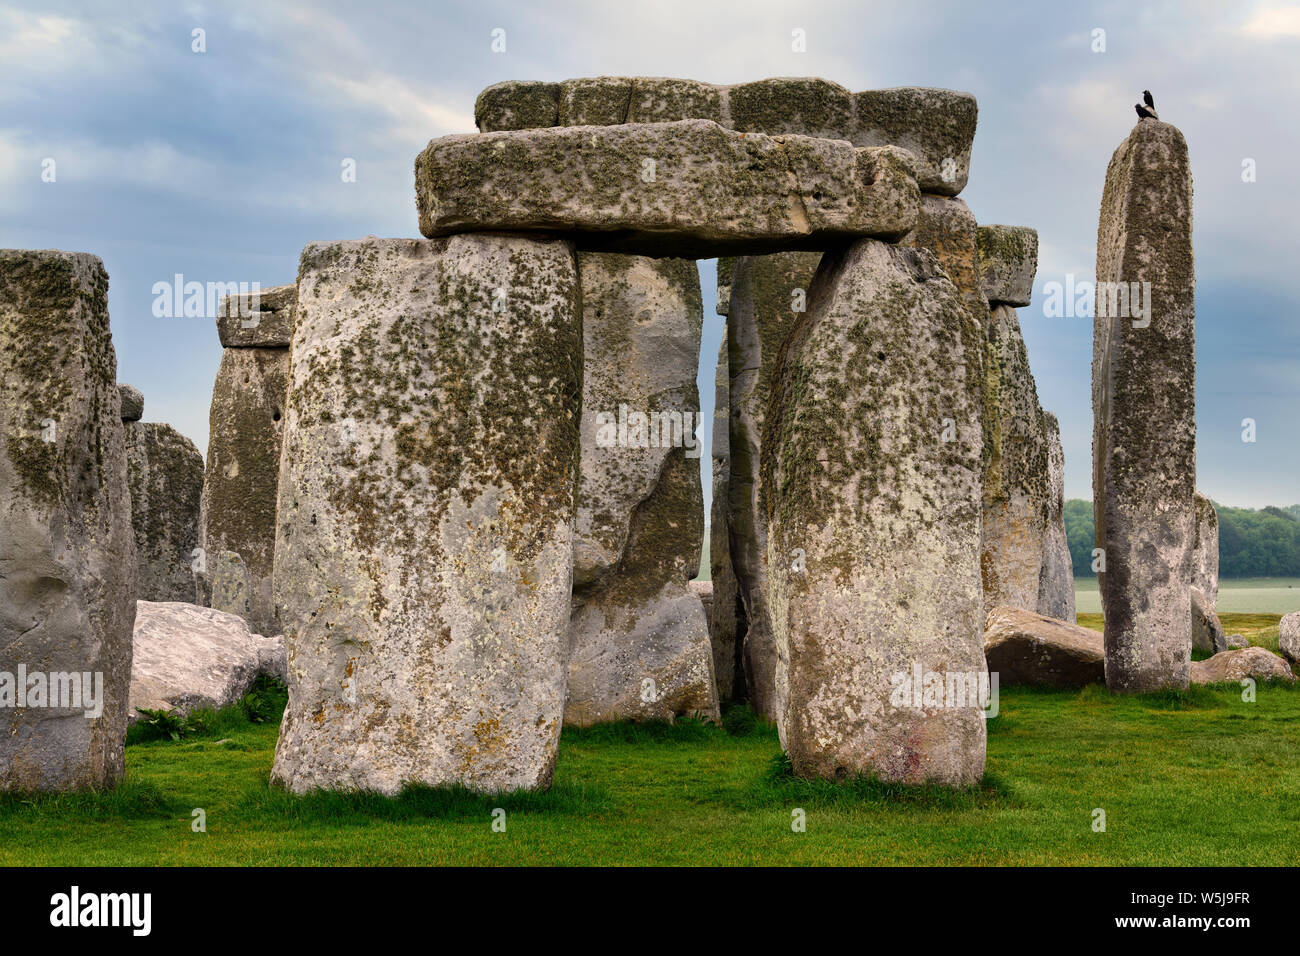 Tall menhirs de Stonehenge le cercle de pierre préhistorique ruines avec des oiseaux de la plaine de Salisbury dans le Wiltshire en Angleterre à la première lumière lever du soleil Banque D'Images